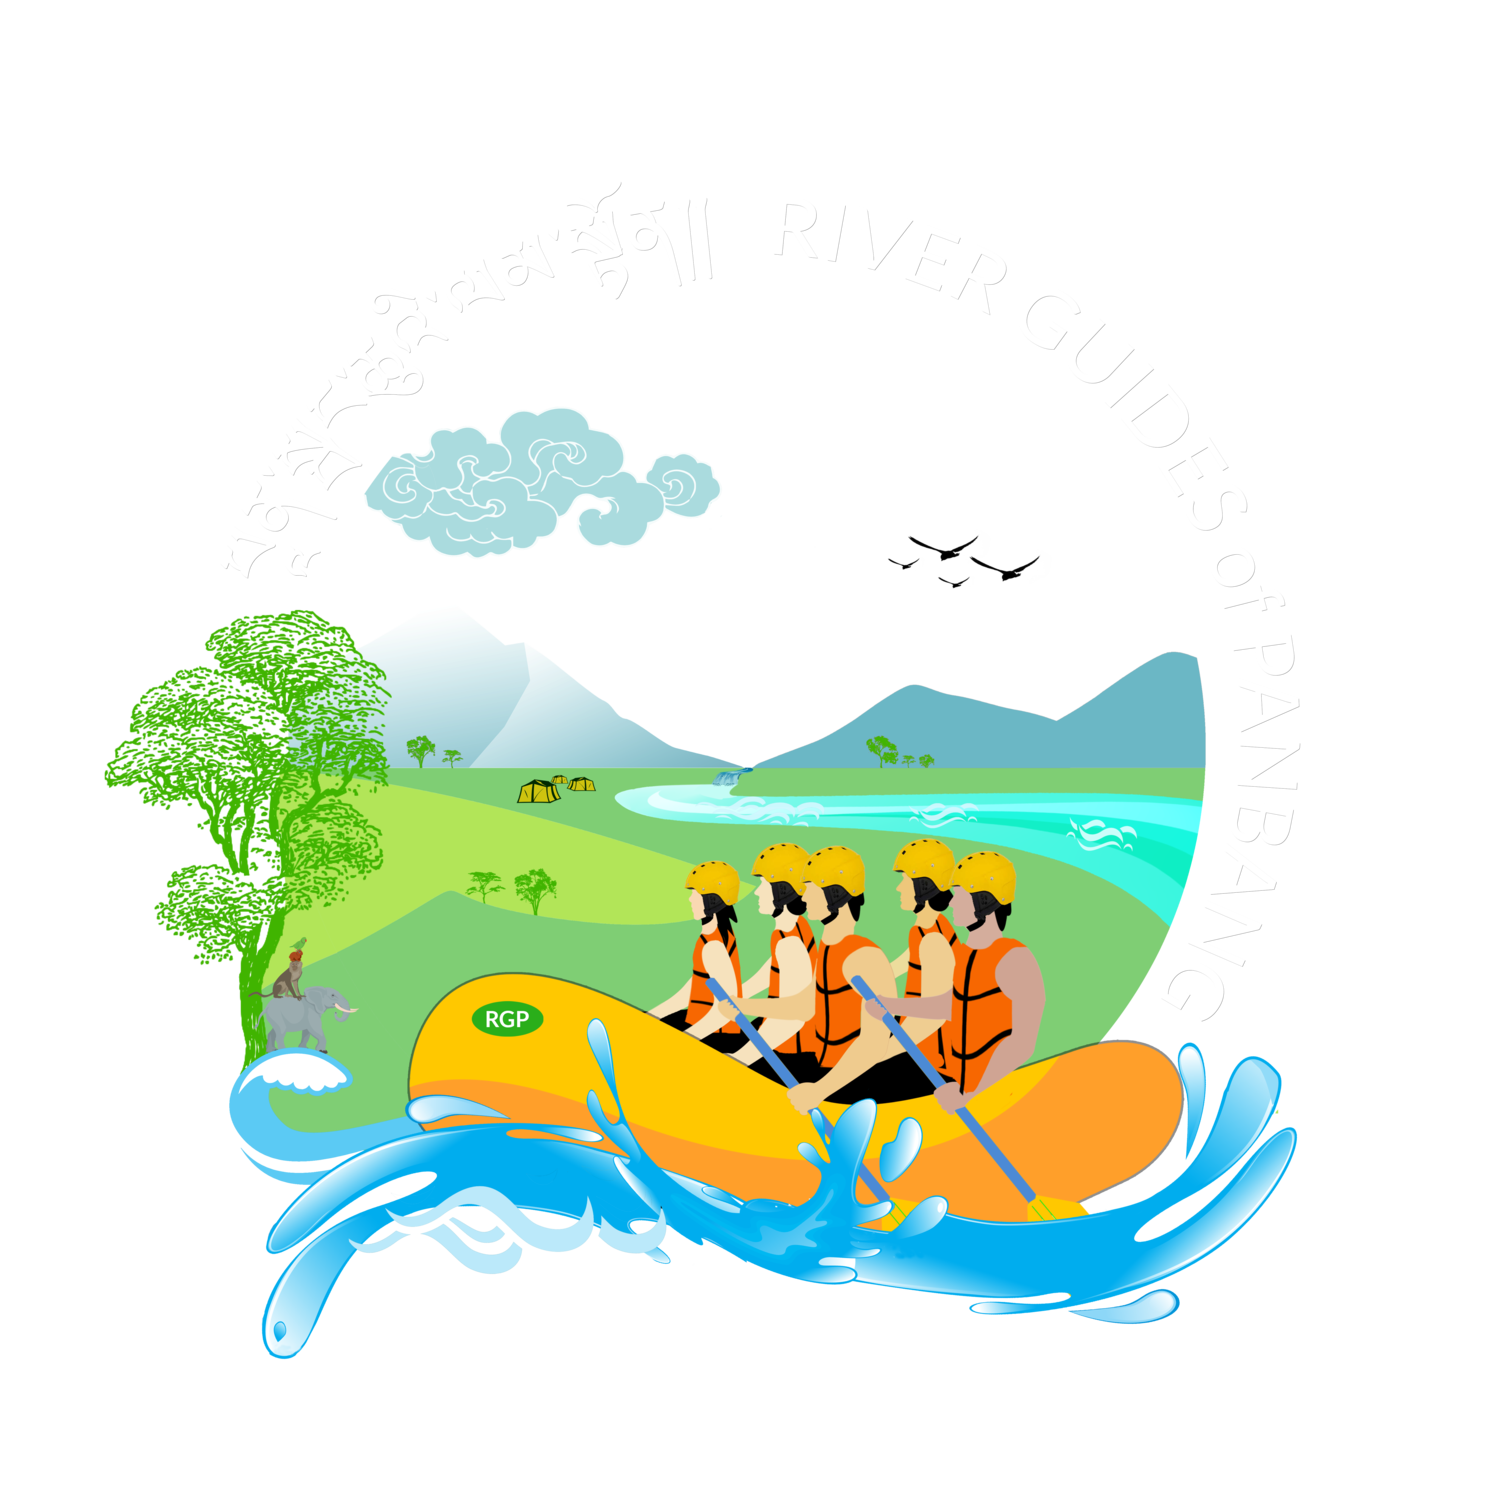 RIVER GUIDES of PANBANGRiver Guides of Panbang